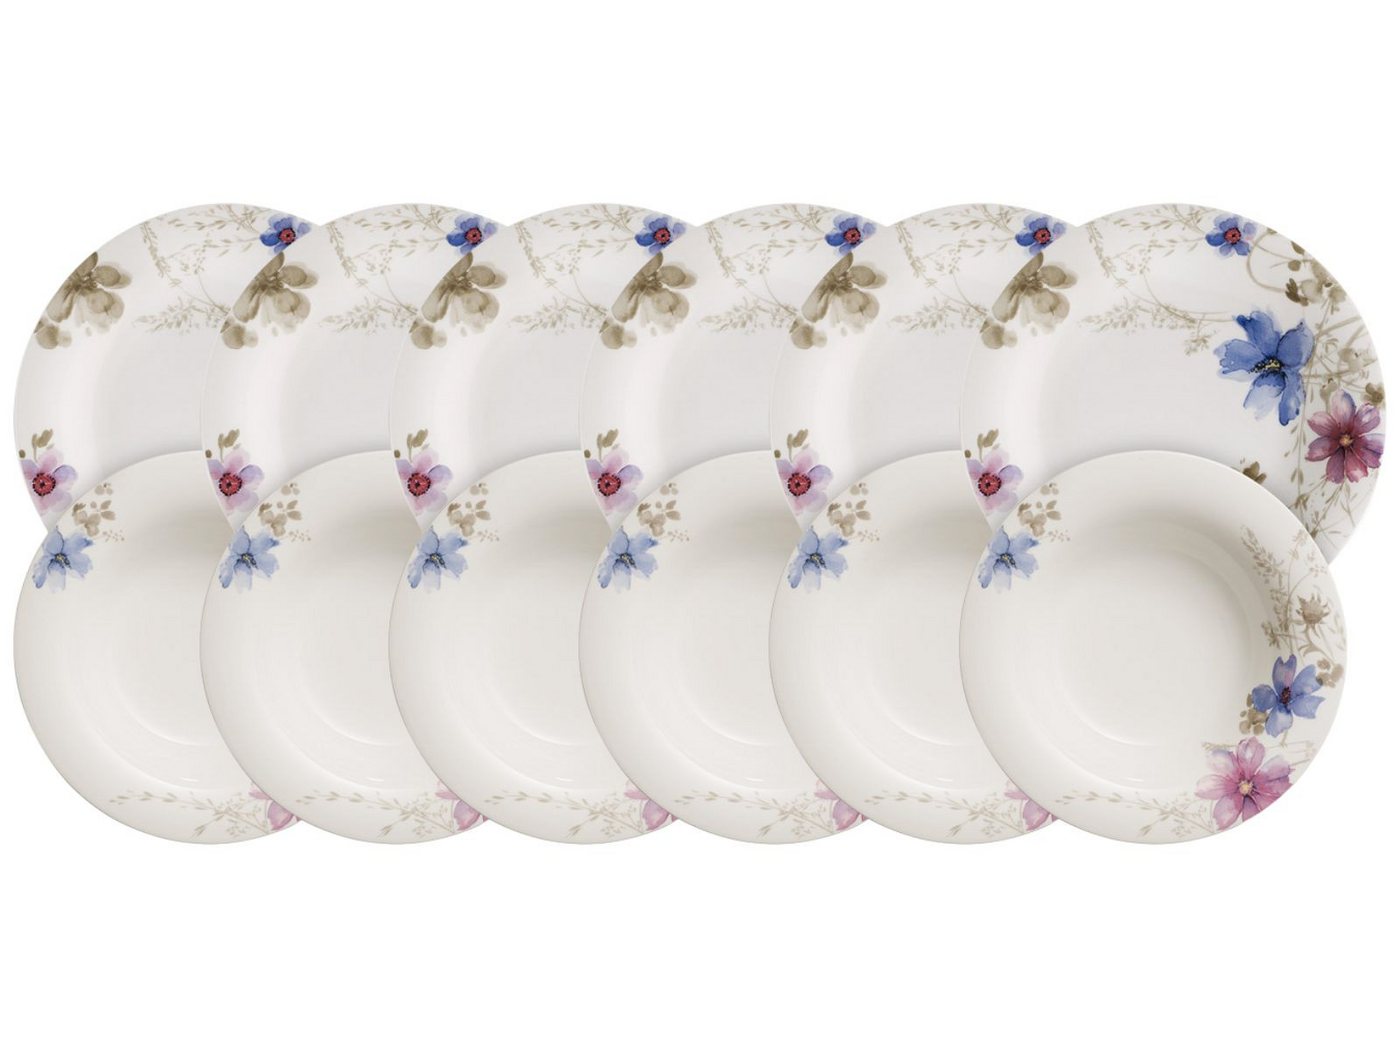 Villeroy & Boch Tafelservice Mariefleur Gris Basic Tafelset 12tlg., Premium Porcelain von Villeroy & Boch